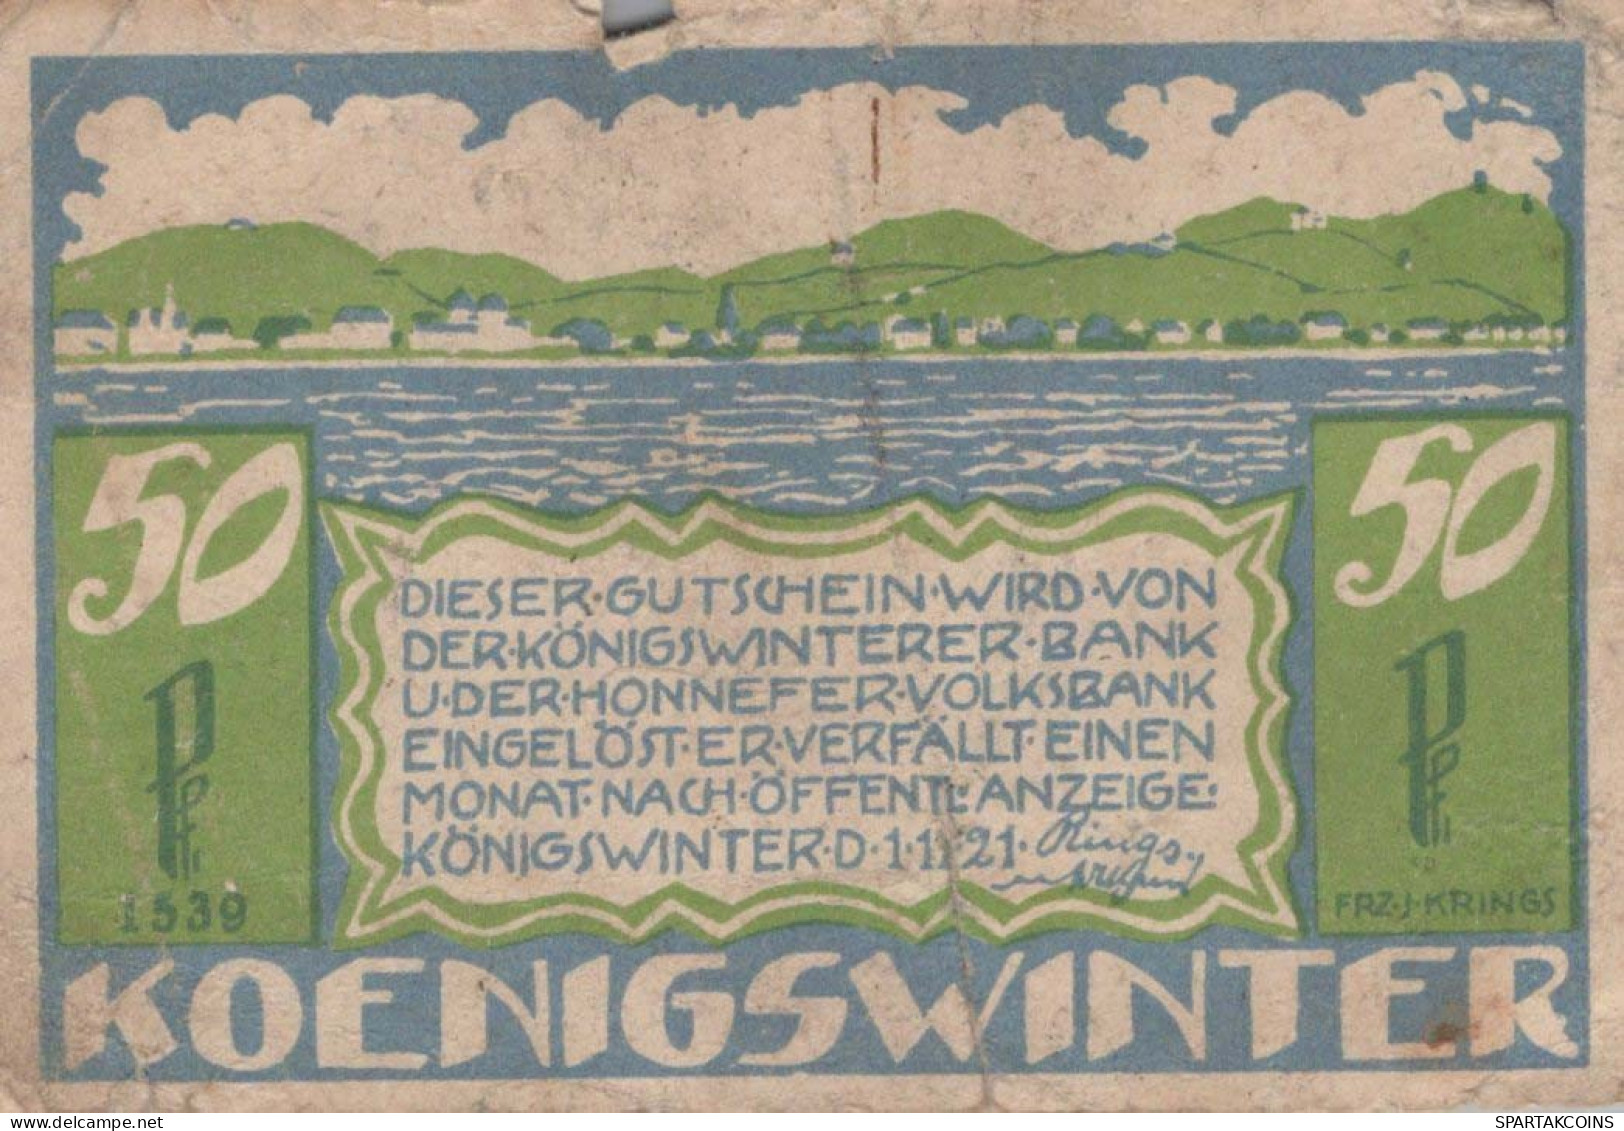 50 PFENNIG 1921 Stadt KoNIGSWINTER Rhine UNC DEUTSCHLAND Notgeld Banknote #PH223 - [11] Local Banknote Issues